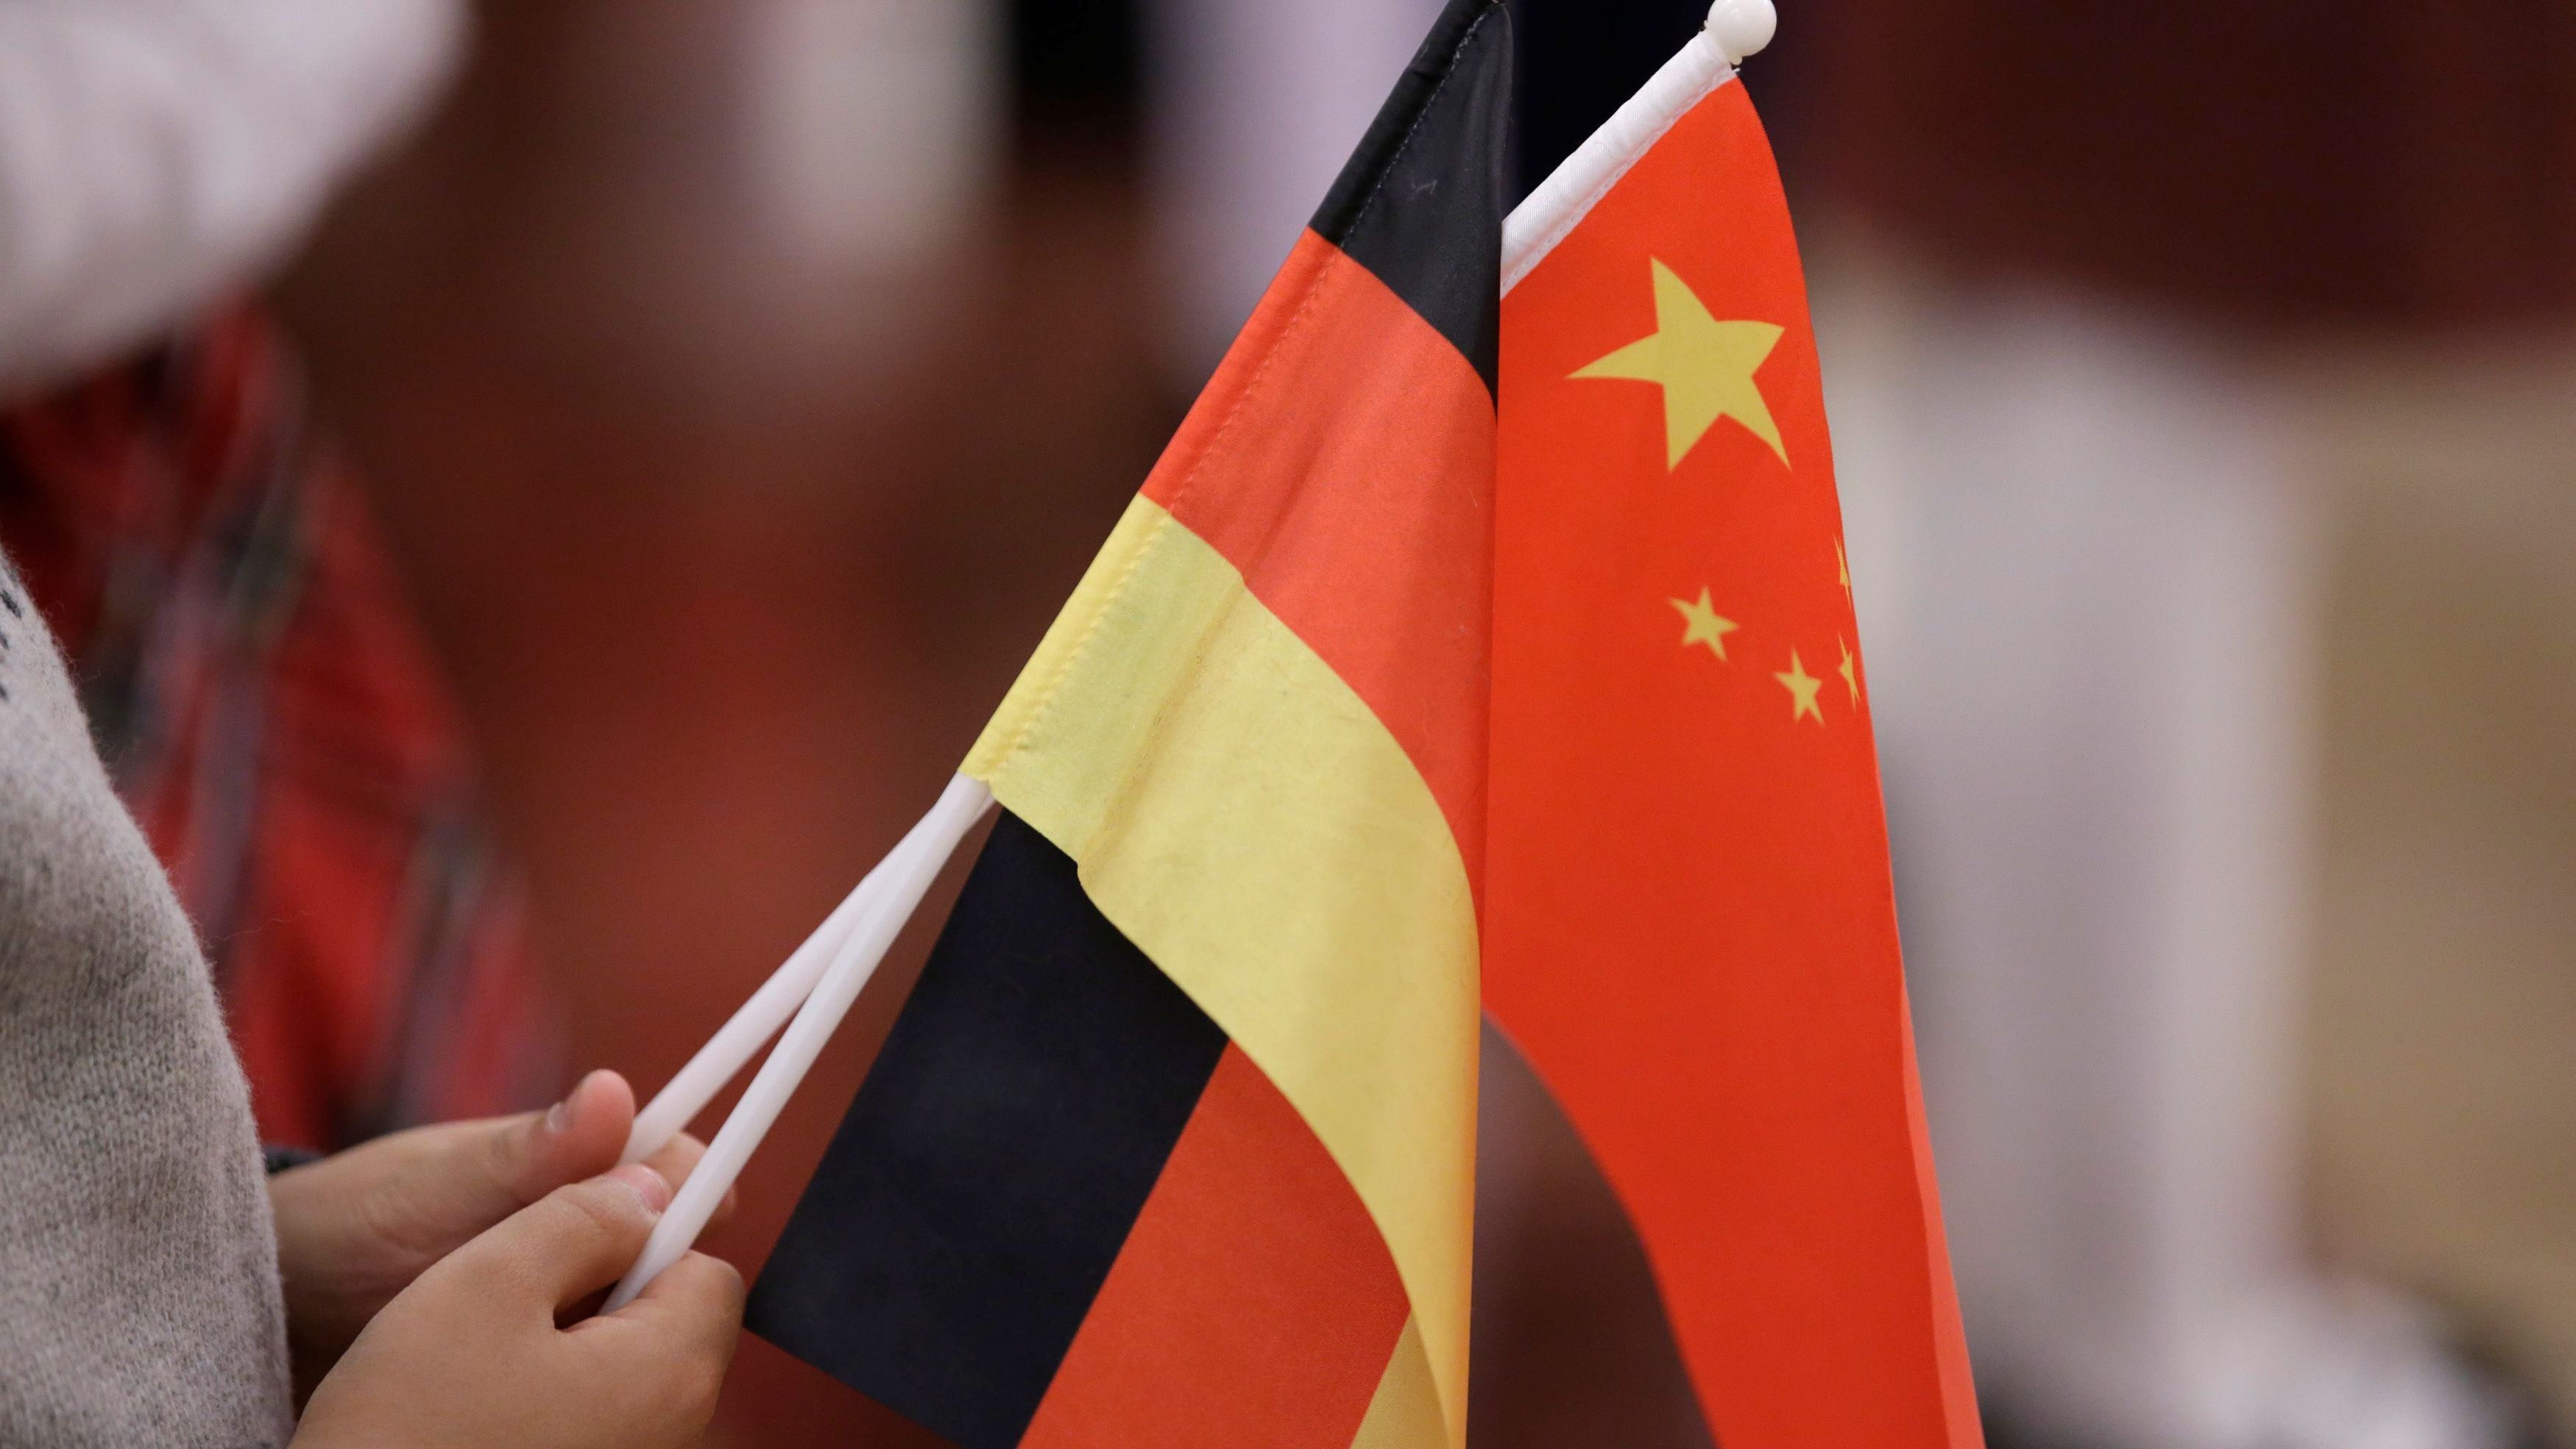 Studium chinesischer Stipendiat:innen in Deutschland durch Angst vor Repressionen und Sippenhaft bestimmt.